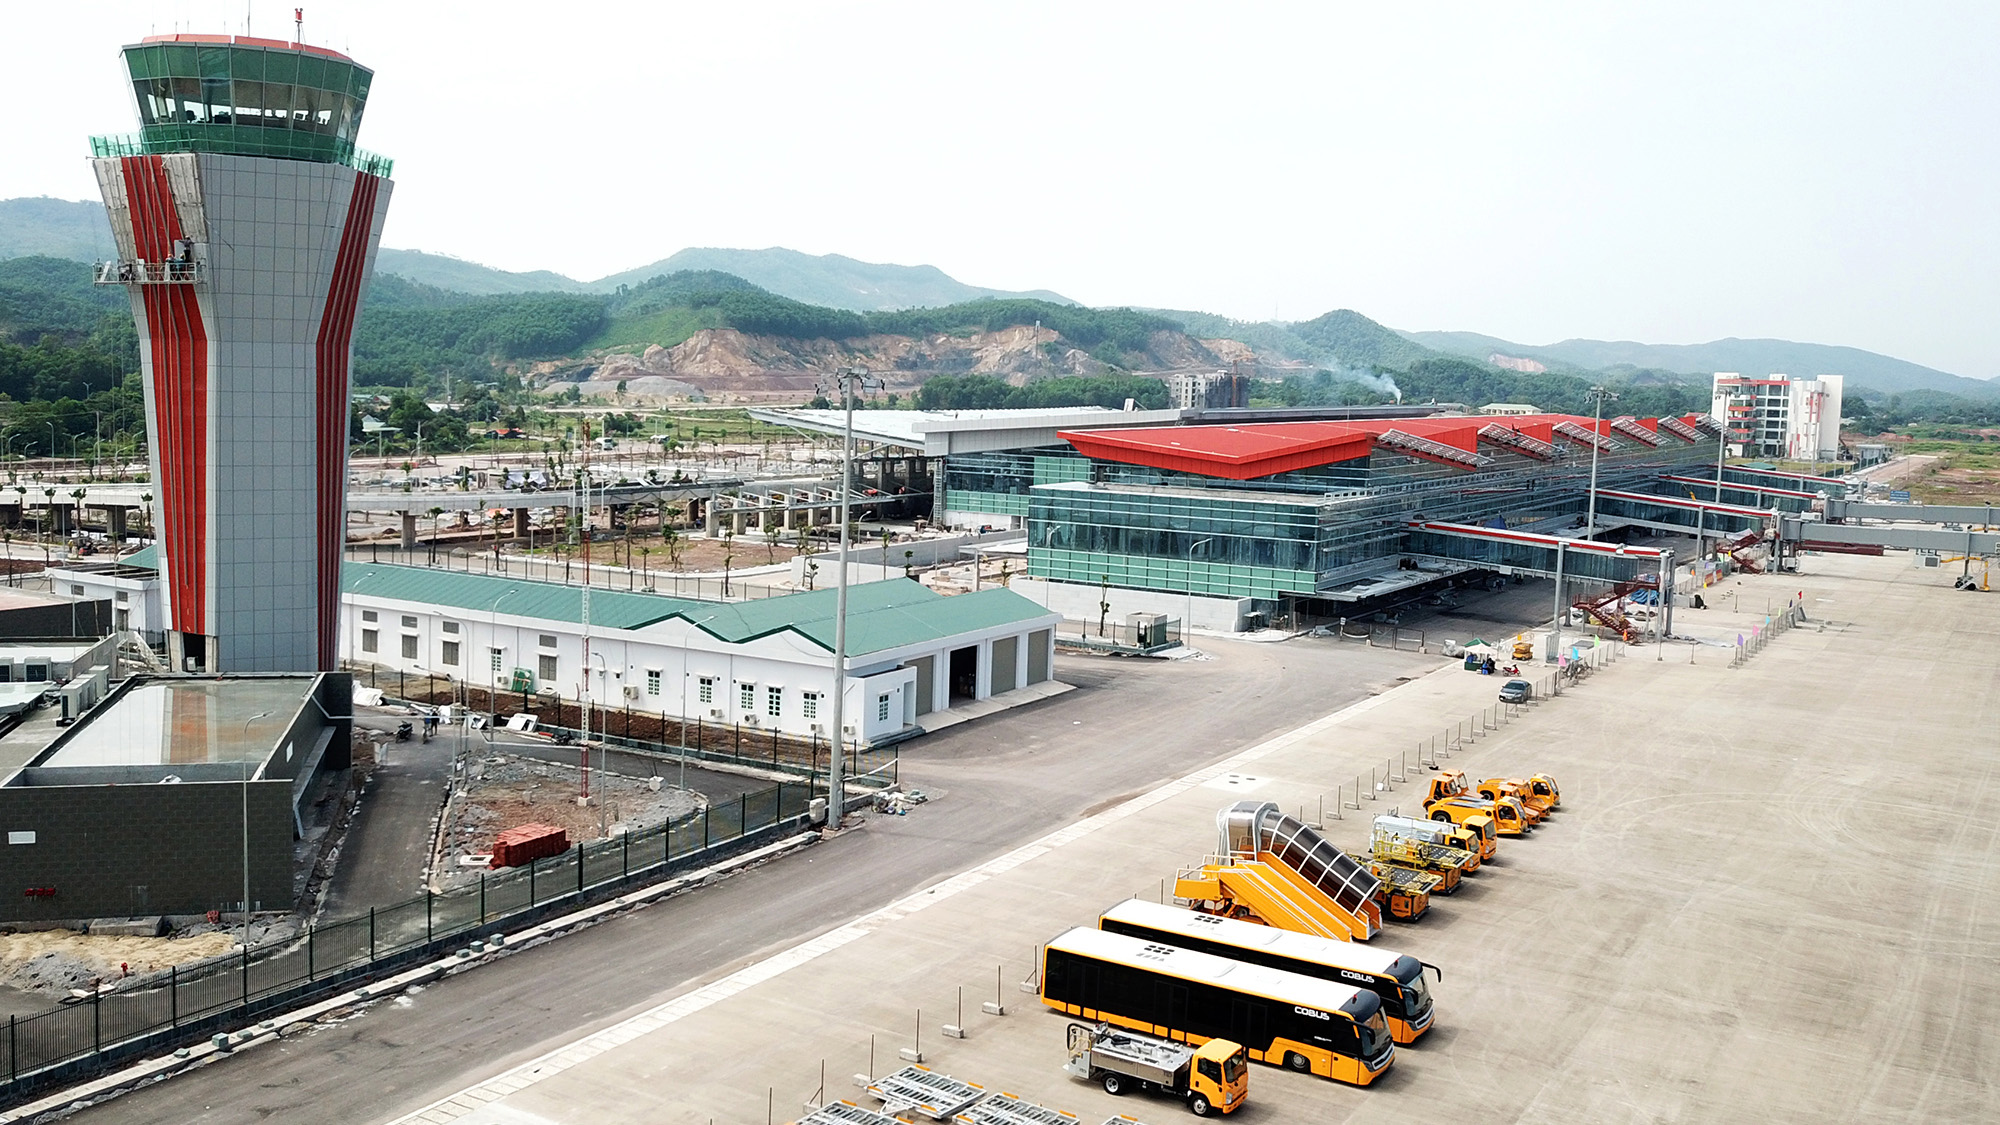 Sân bay quốc tế Vân Đồn là sân bay tư nhân đầu tiên trong cả nước, có công suất 2,5 triệu hành khách và 10.000 tấn hàng hoá/năm. Ảnh: Đỗ Phương